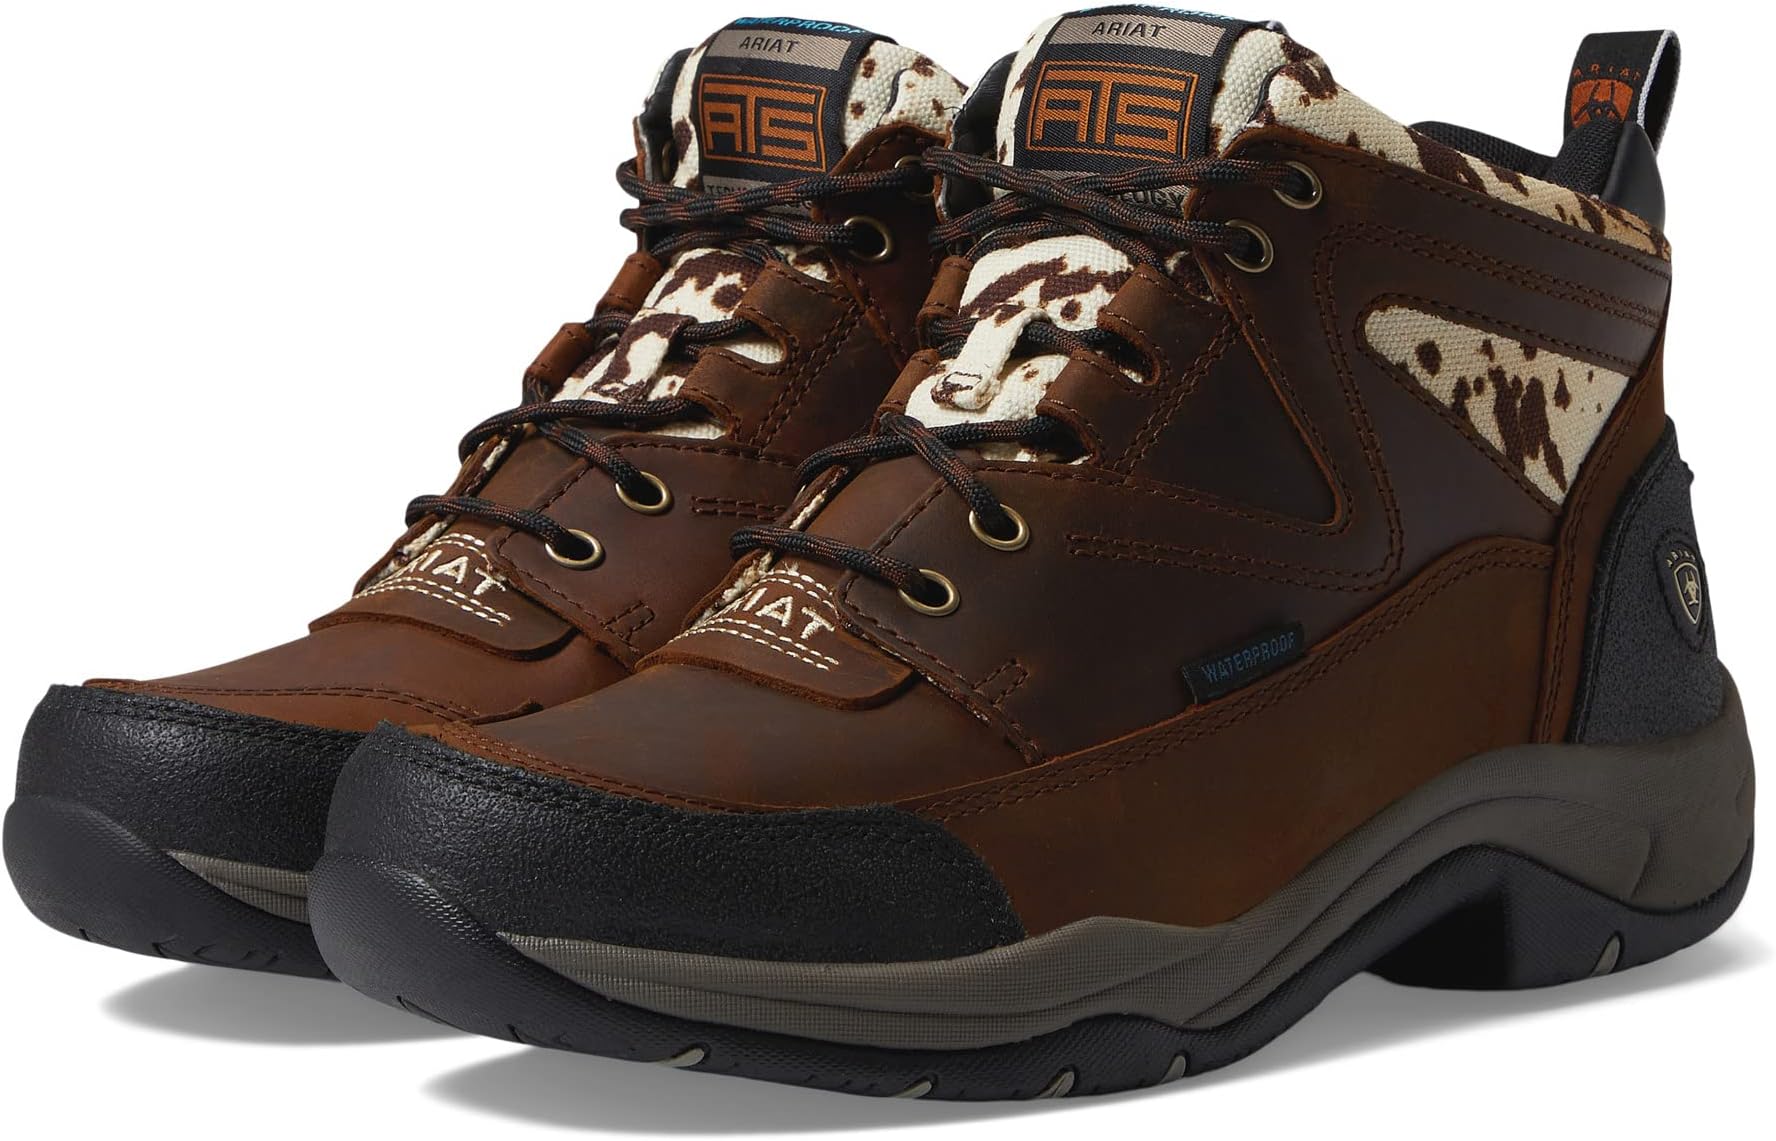 Походная обувь водонепроницаемая Terrain Waterproof Boot Ariat, цвет Distressed Brown/Speckled Cow Print